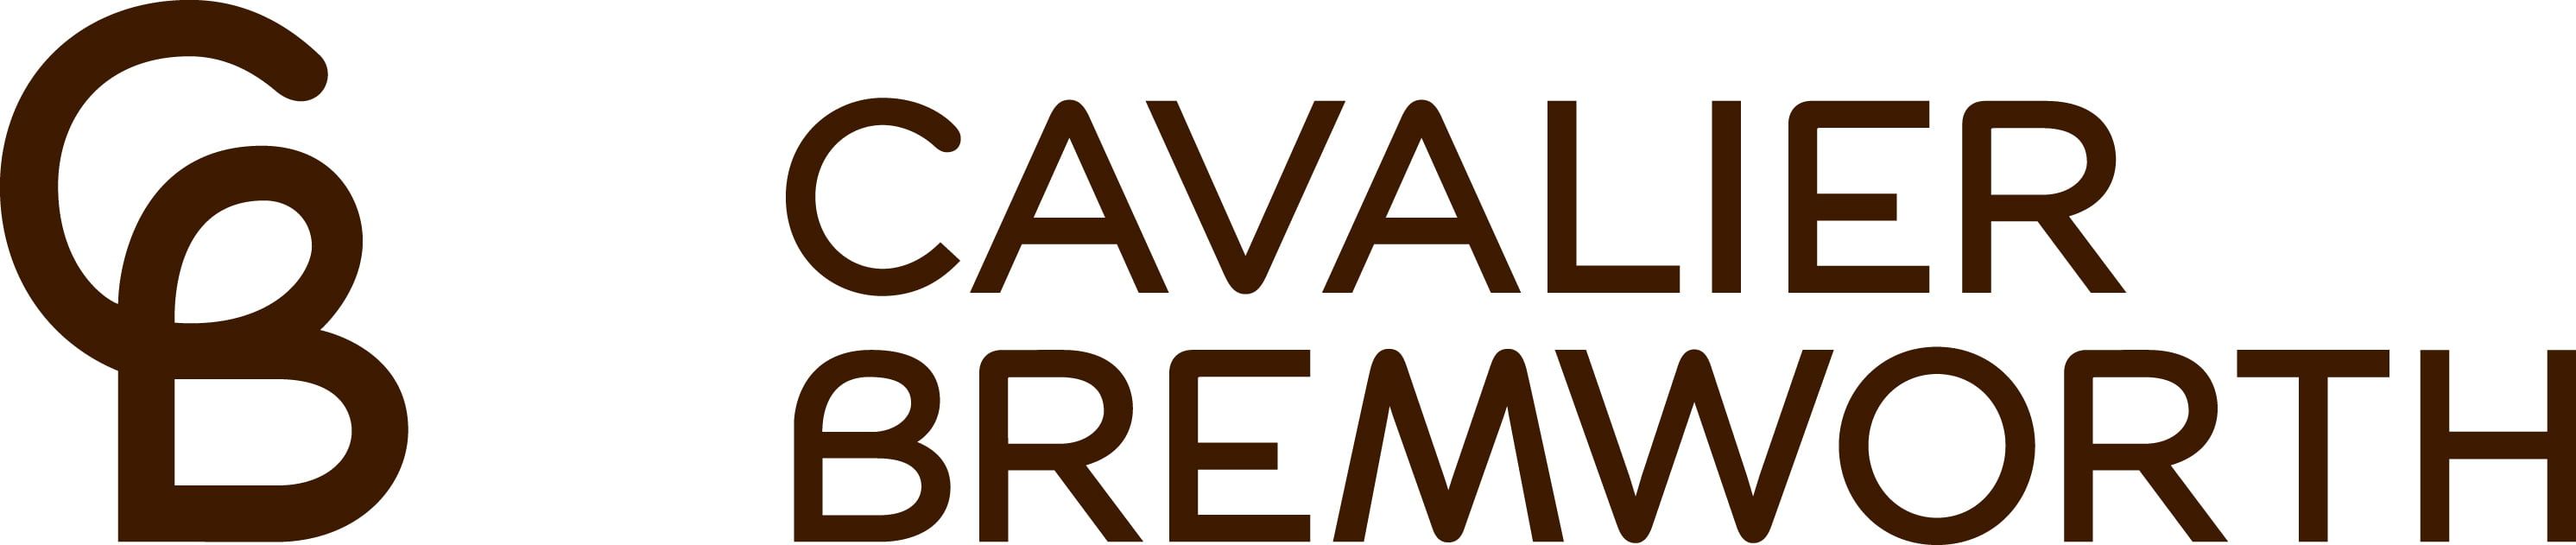 Cavalier Bremworth logo